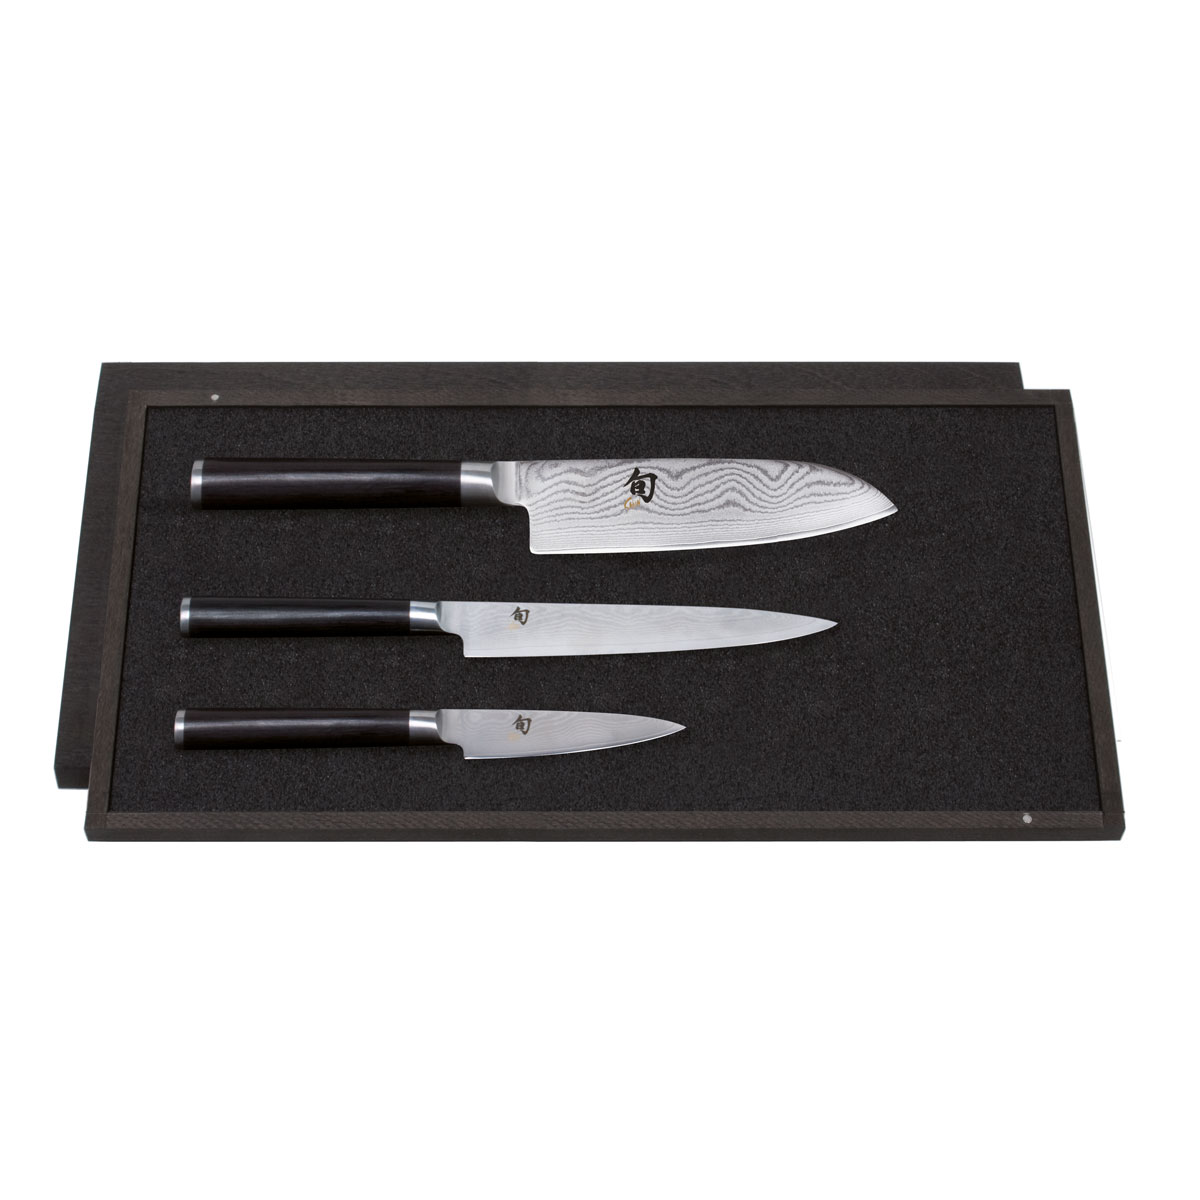 KAI Shun Classic 3-teiliges Messer-Set mit Officemesser, Allzweckmesser & Santokumesser - Damaststahl - Griff Pakkaholz